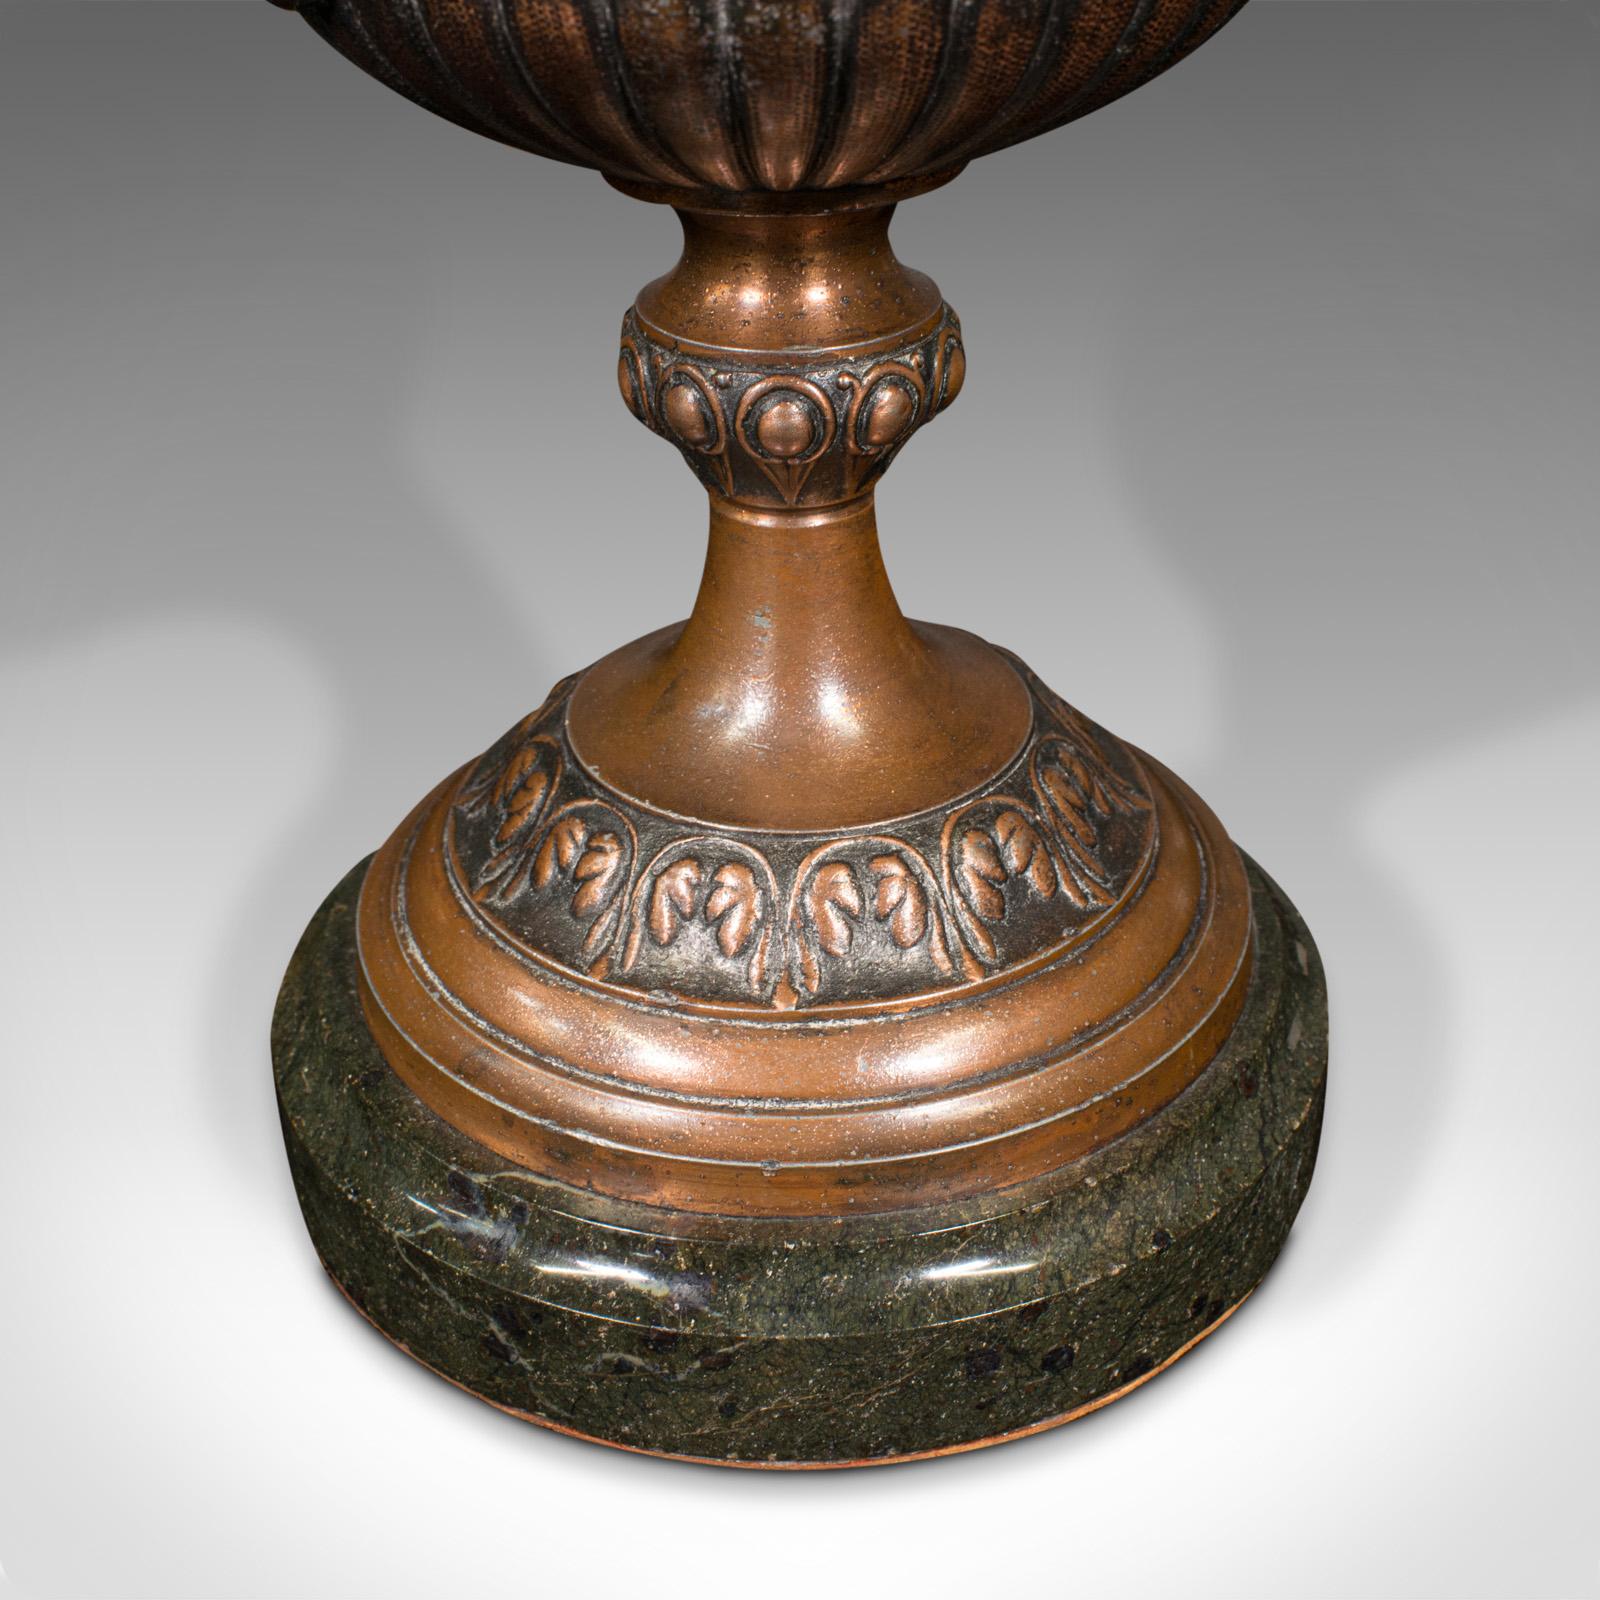 Pair, Antique Grand Tour Urns, Italian, Decorative Vase, Roman Taste, Victorian For Sale 6